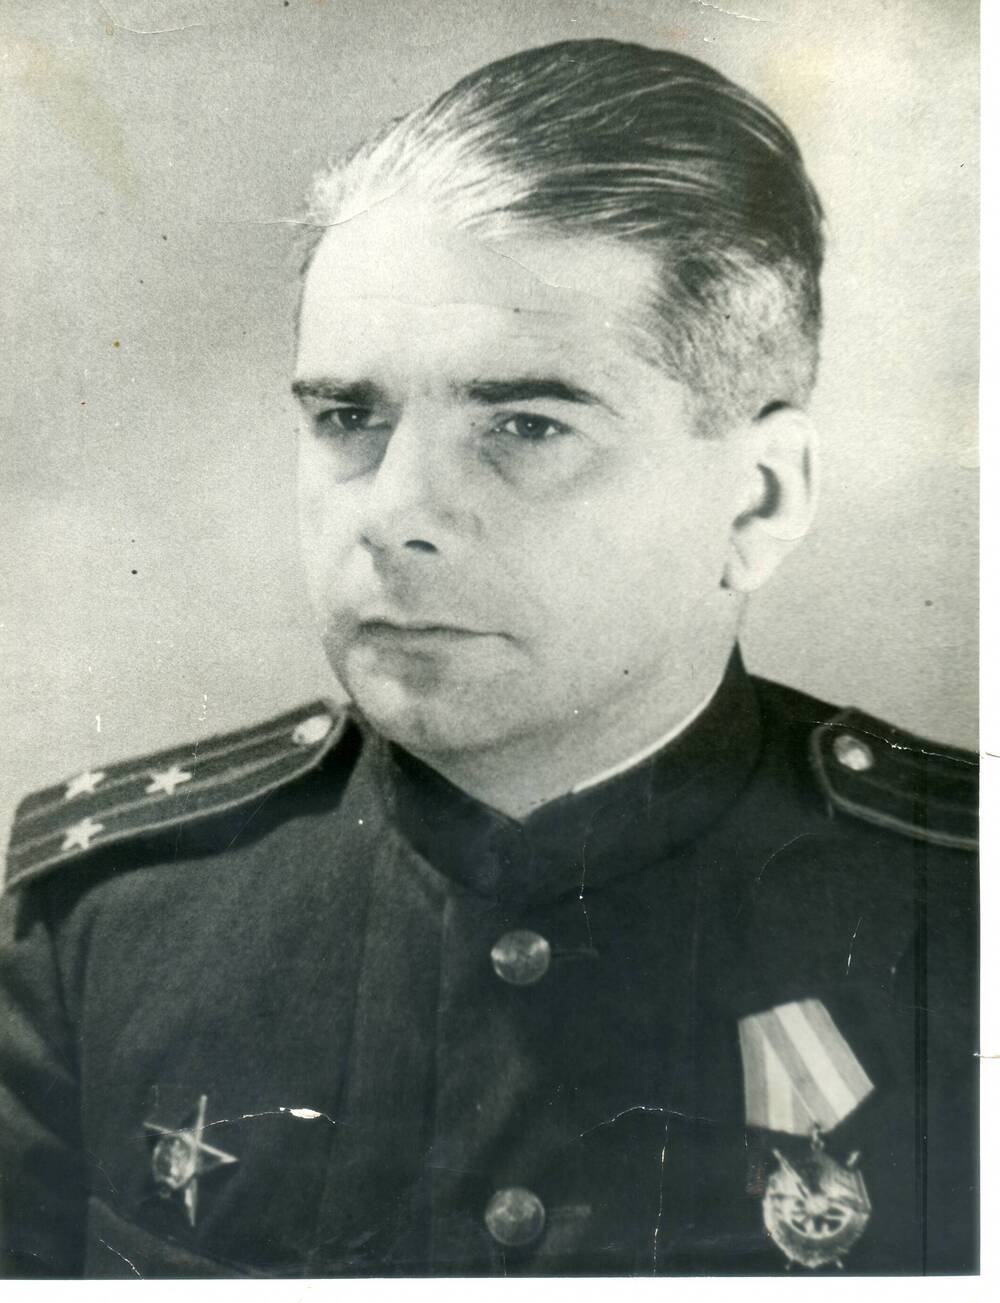 Фото 1945 года. Георгий Ростиславович Брант -член Военного совета 49 армии, город Спас-Деменск